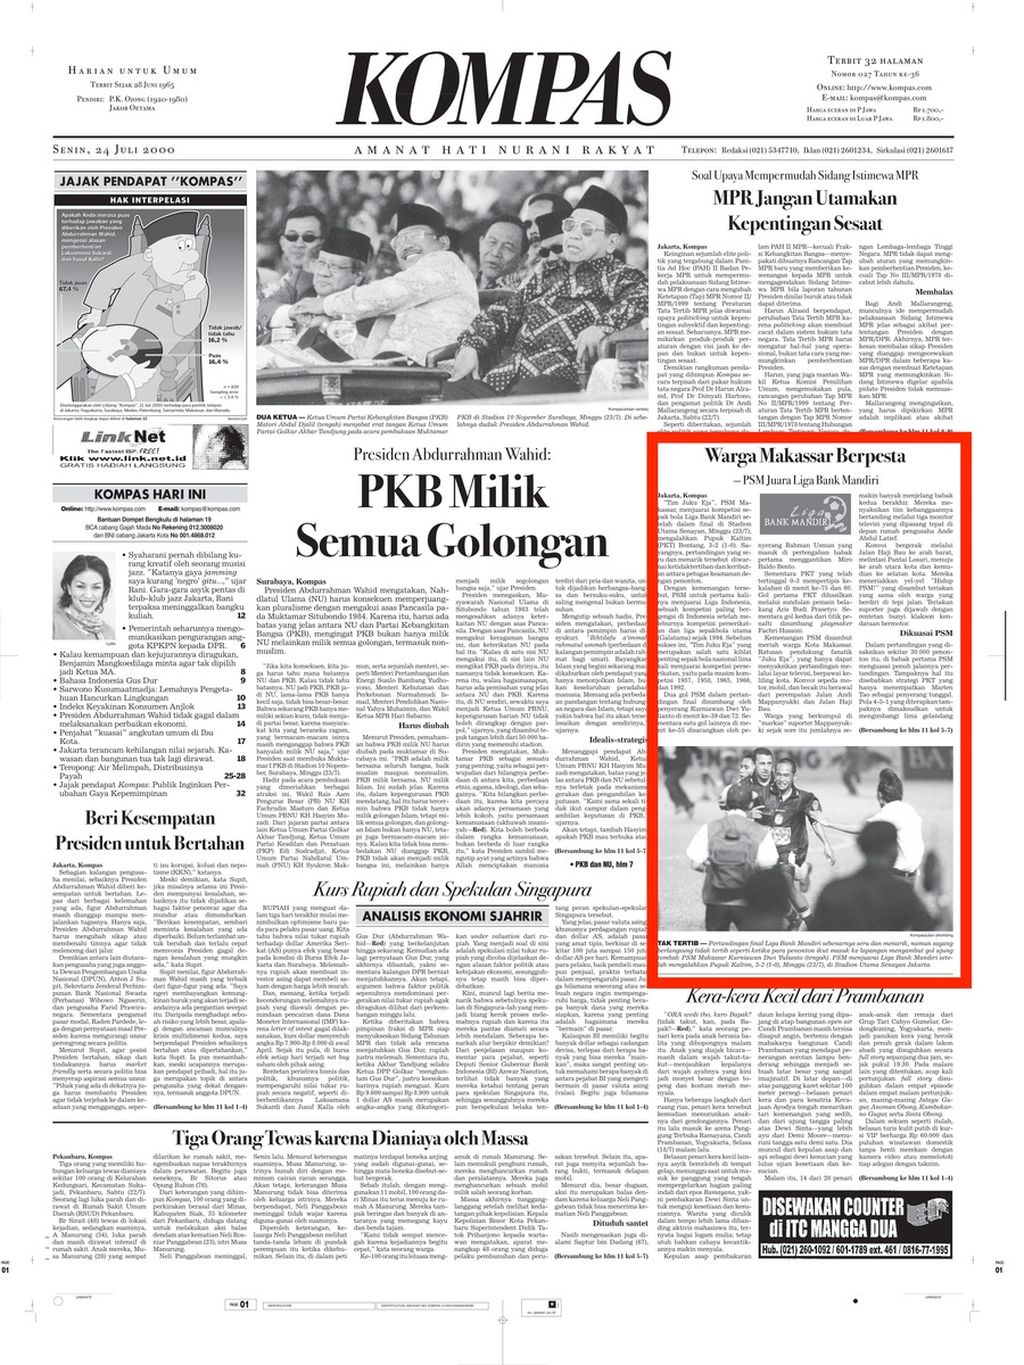 Halaman muka "Kompas" edisi Senin, 24 Juli 2000, yang menampilkan berita tentang PSM Makassar juara Liga Indonesia 1999-2000. (Berita diberi kotak merah)